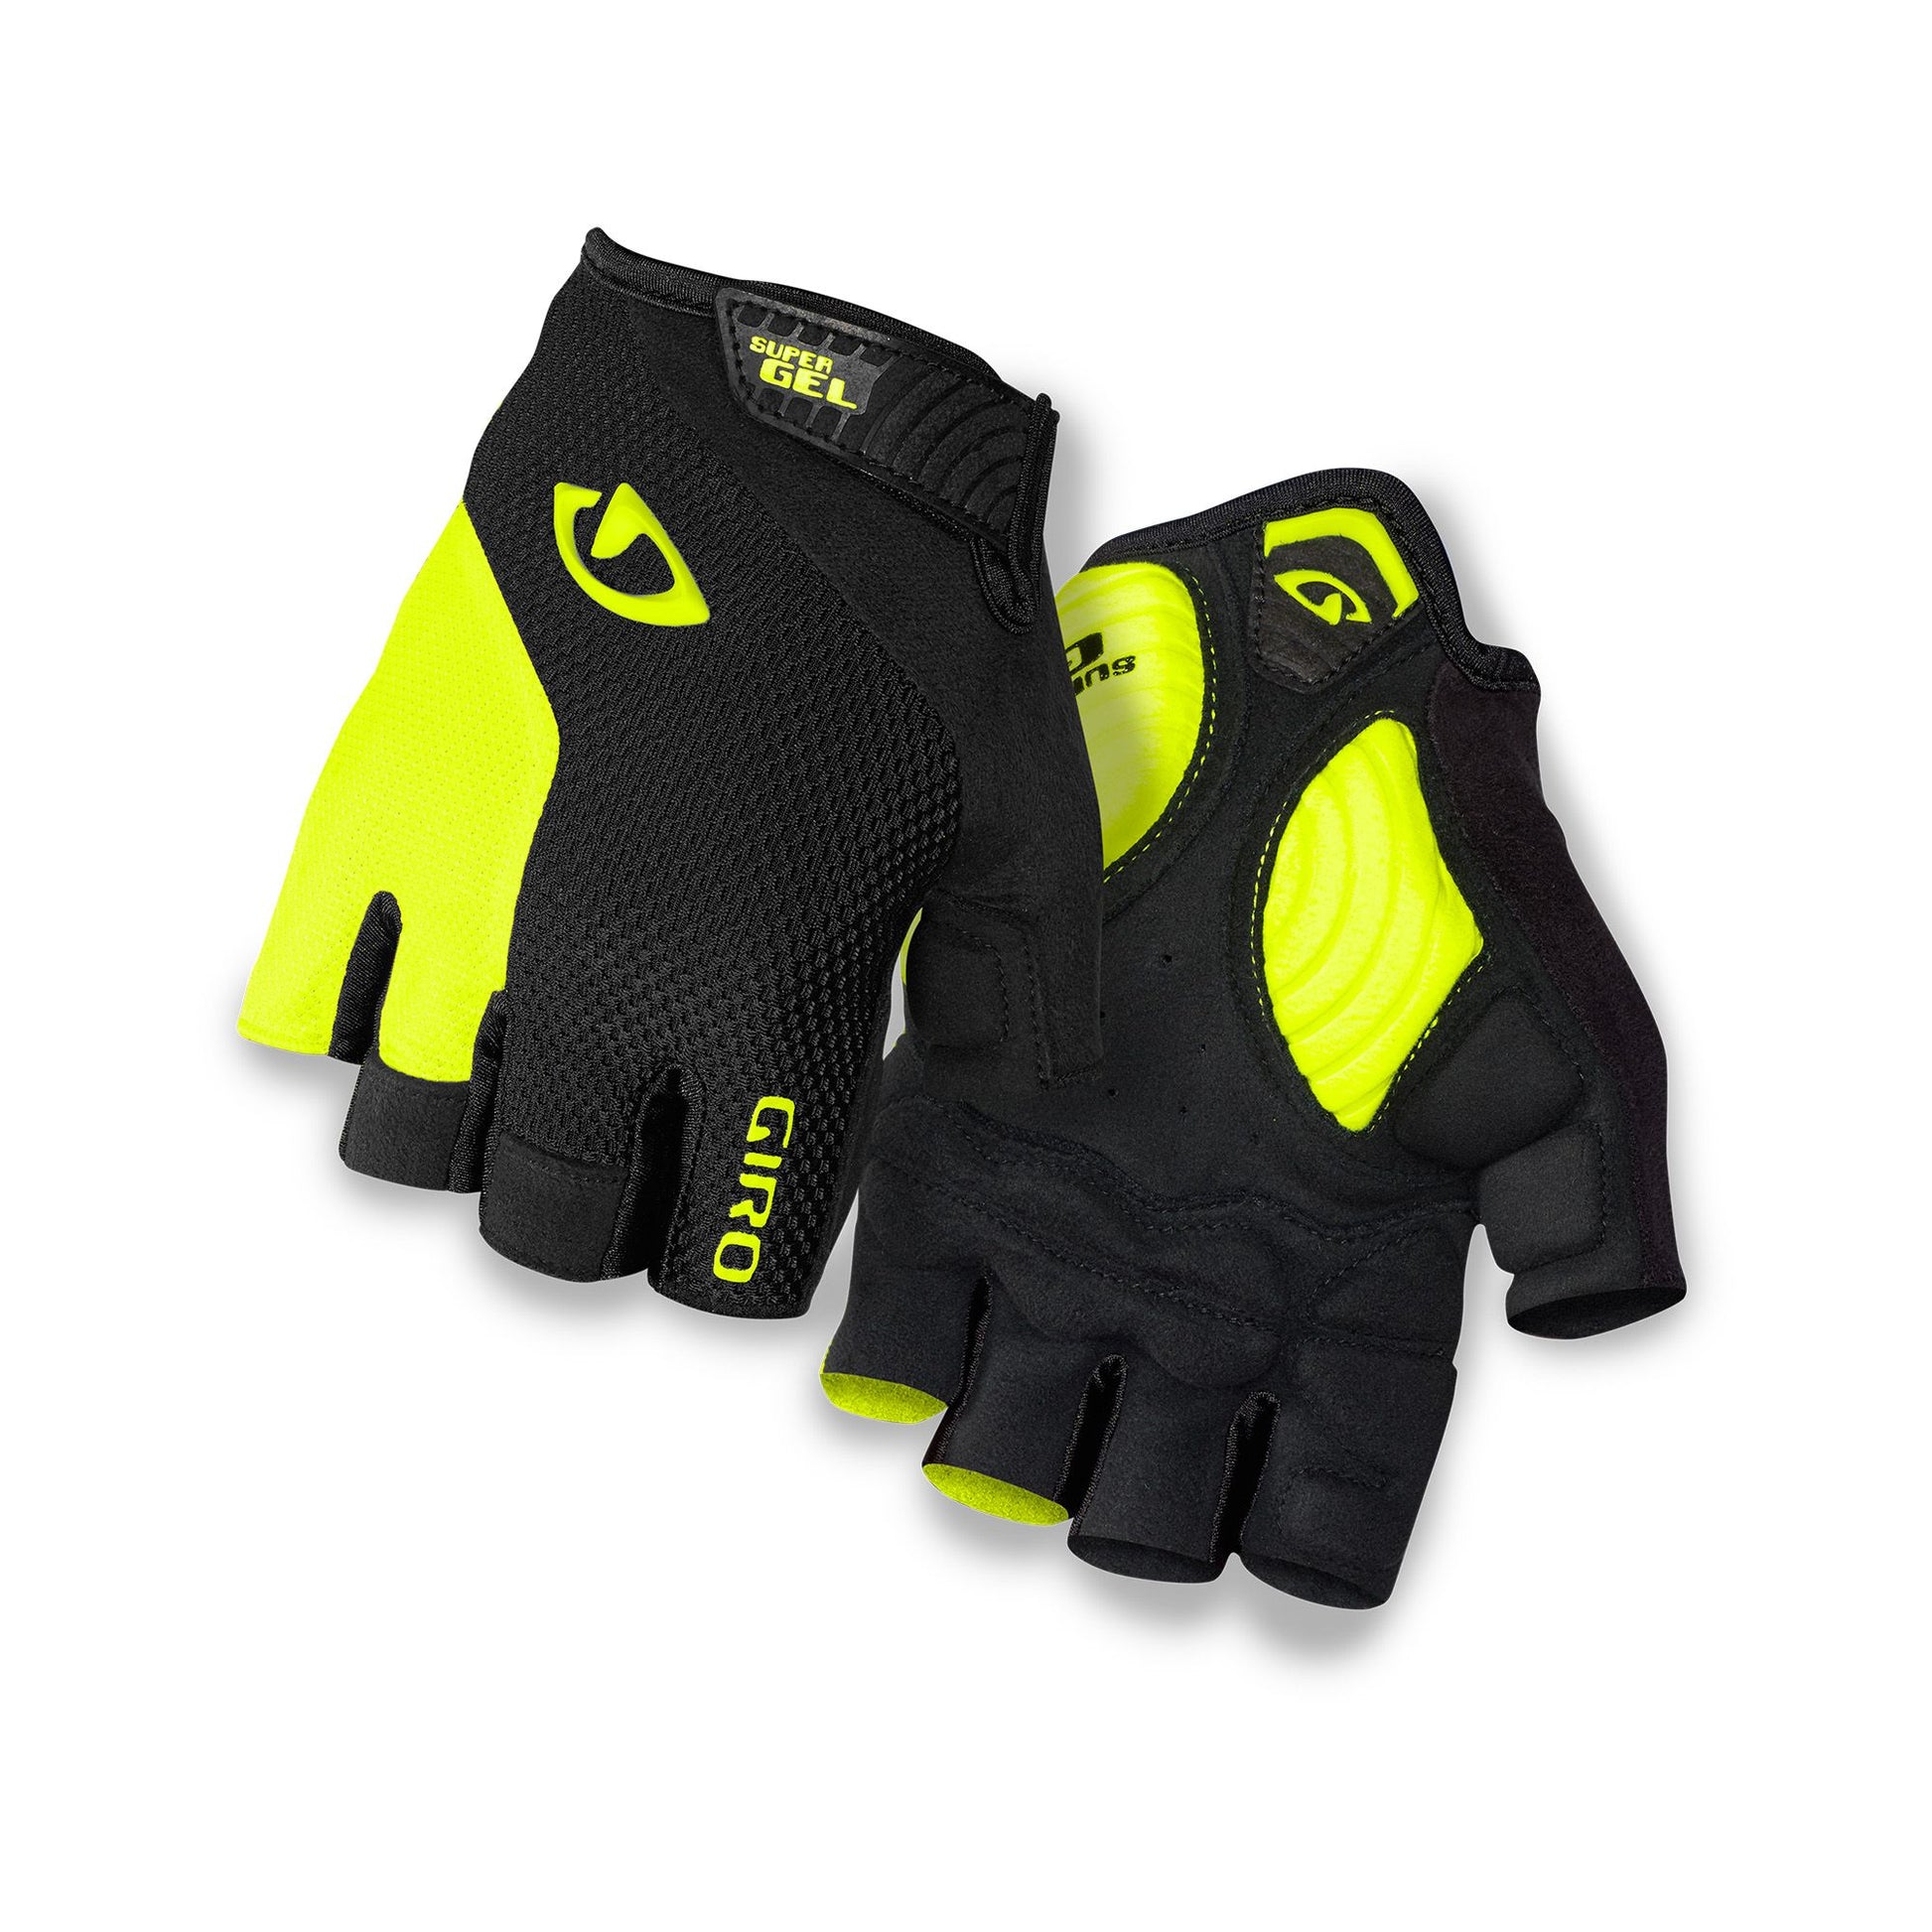 Giro Men's Strade Dure SG Glove Black Highlight Yellow Bike Gloves